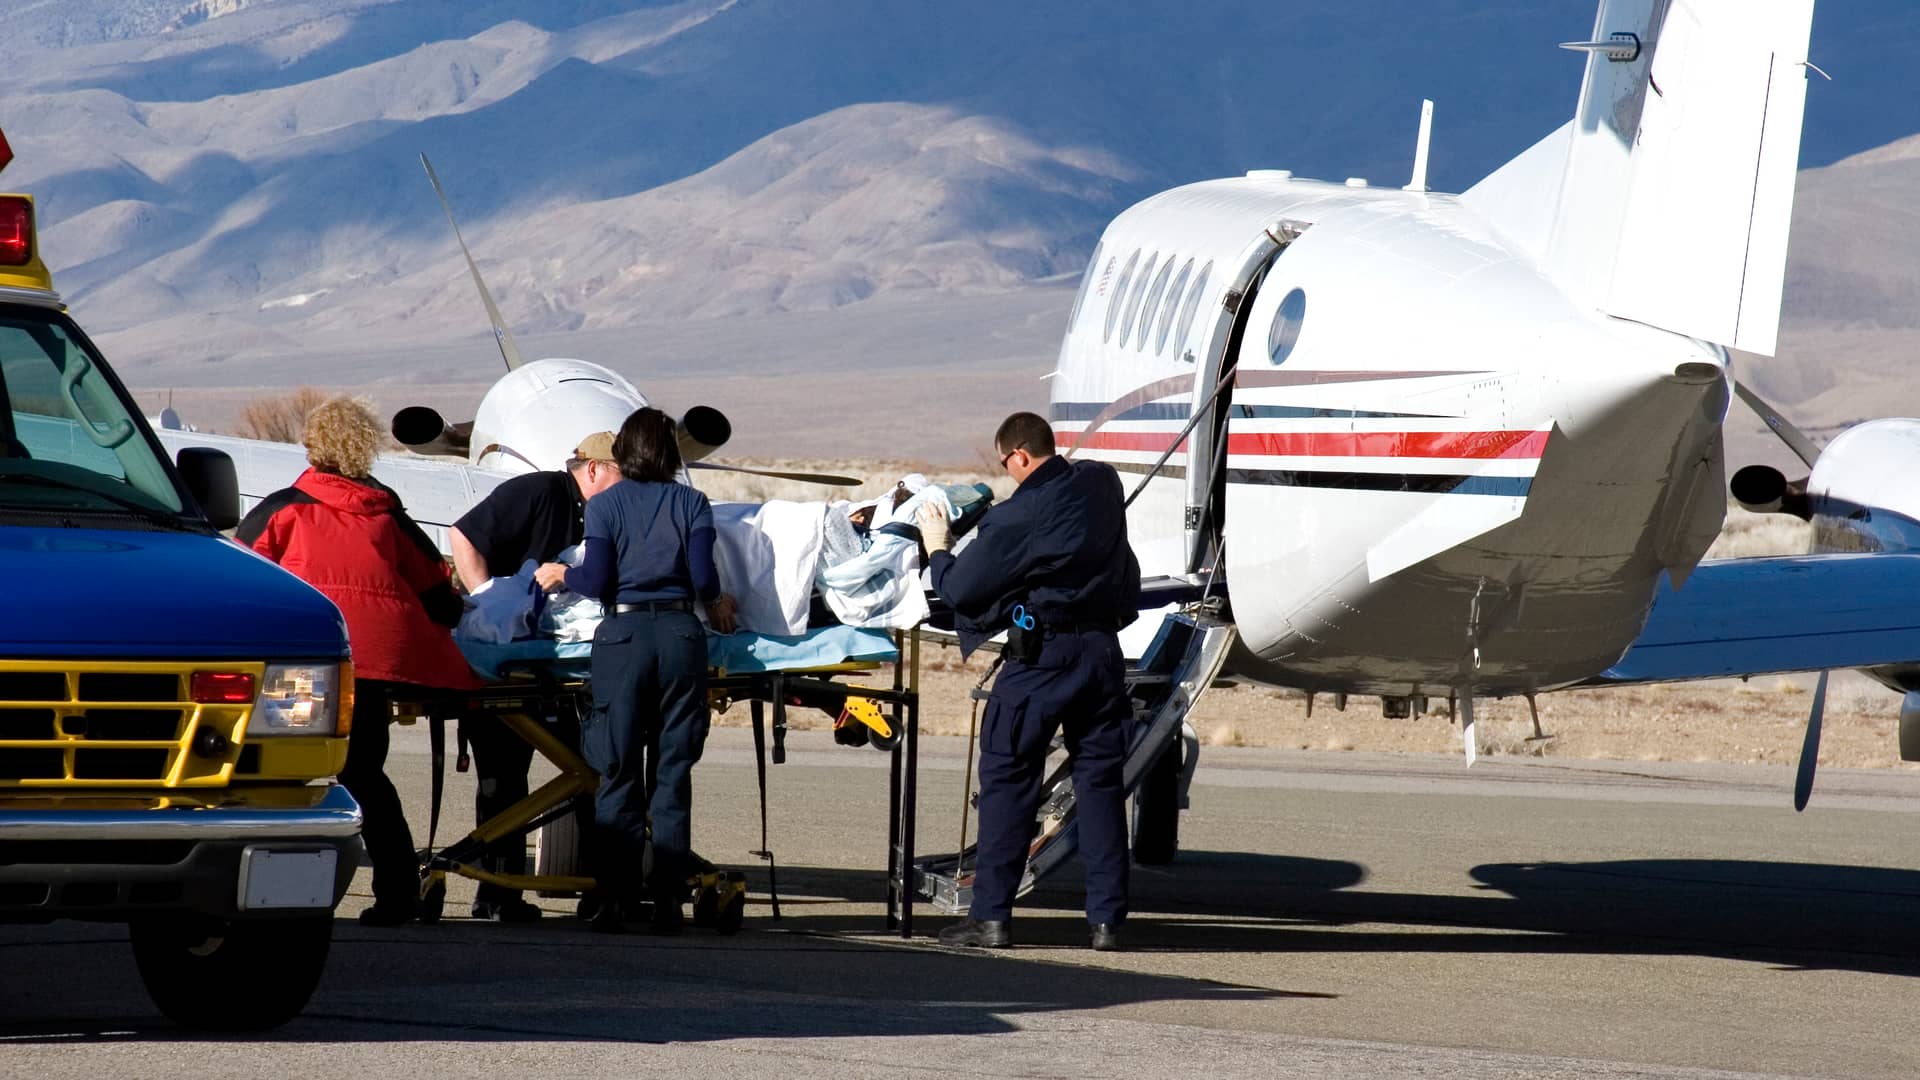 Preparando a persona herida con seguro de viaje antes de subir al avión para repatriarlo a su país